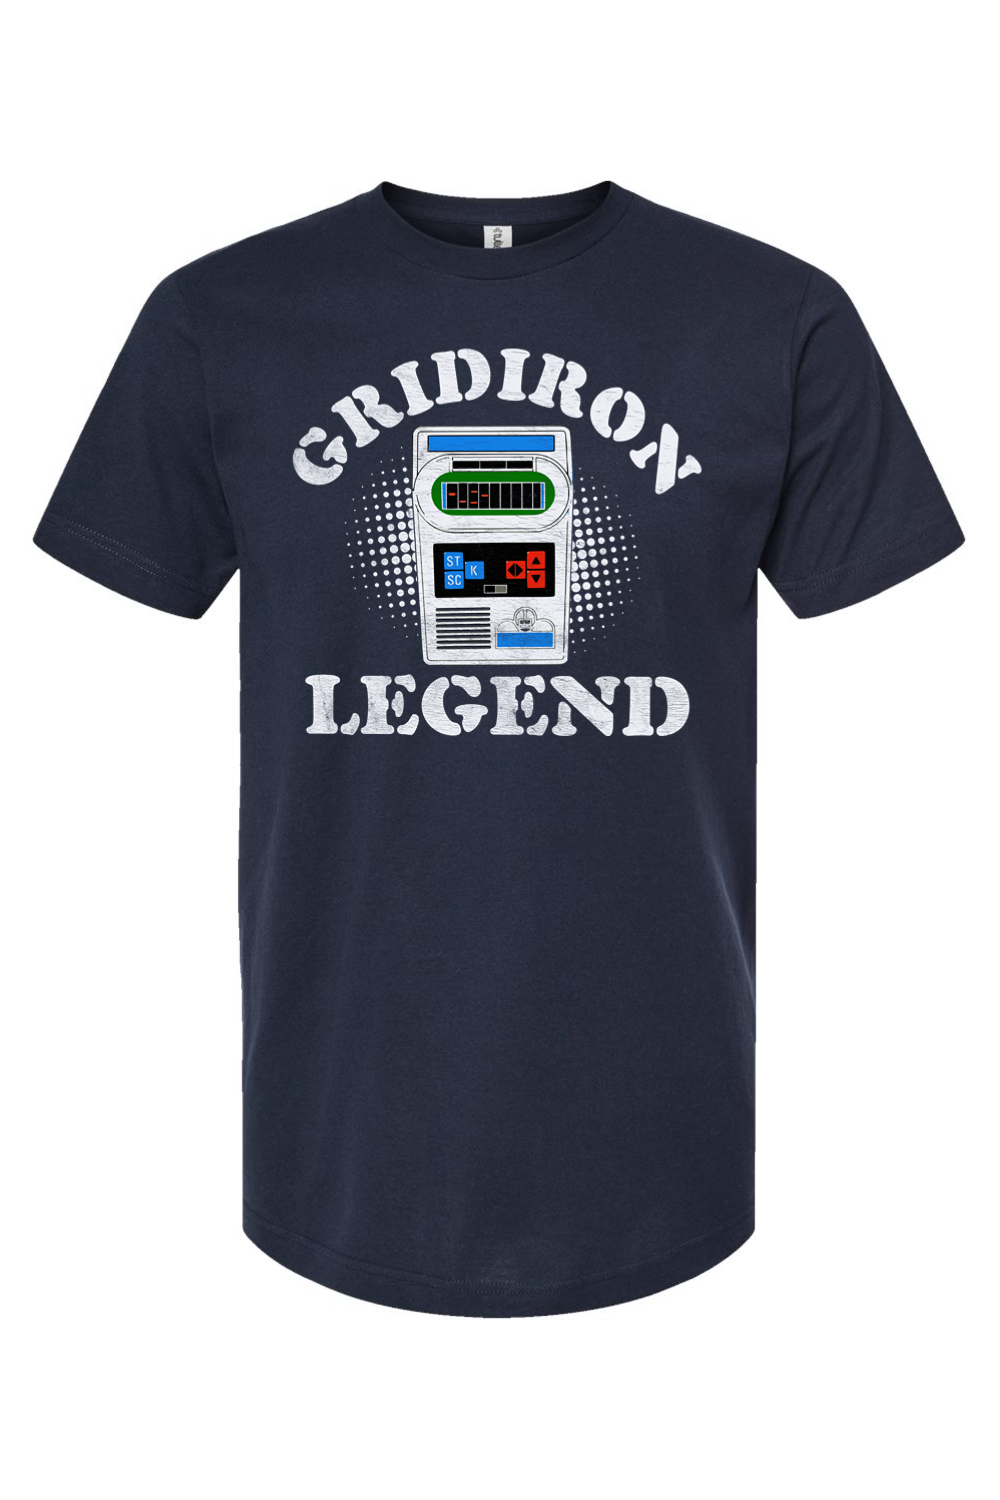 Gridiron Legend - Electronic Football - Yinzylvania